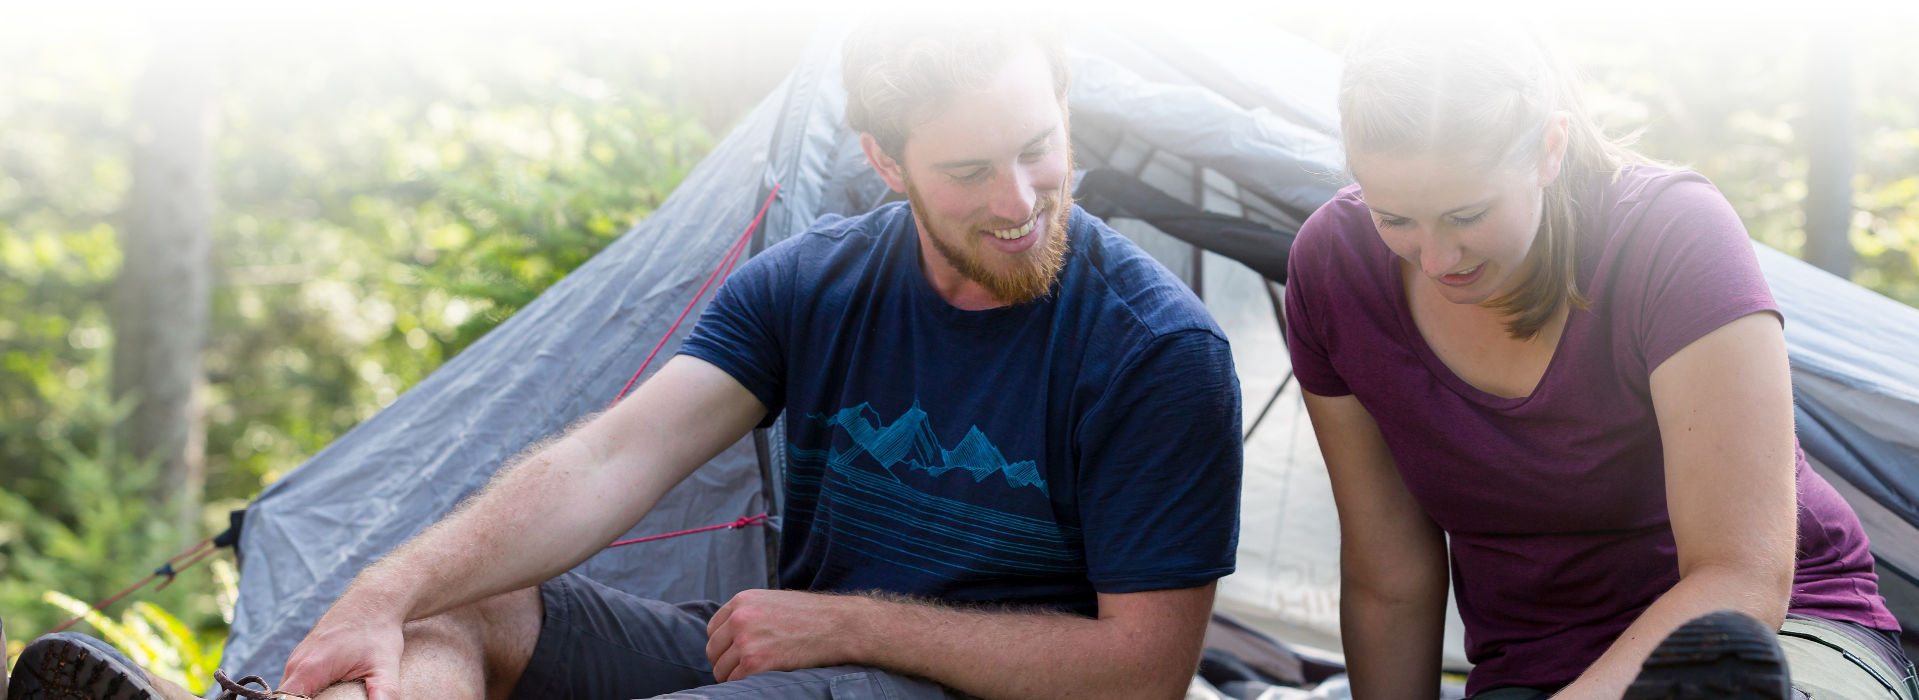 Ein Mann und eine Frau, beide zwischen 20 und 30 Jahre alt, sitzen in sommerlicher Wanderkleidung vor einem kleinen Zelt und schauen in eine Wanderkarte, die zwischen ihnen ausgebreitet auf dem Boden liegt.